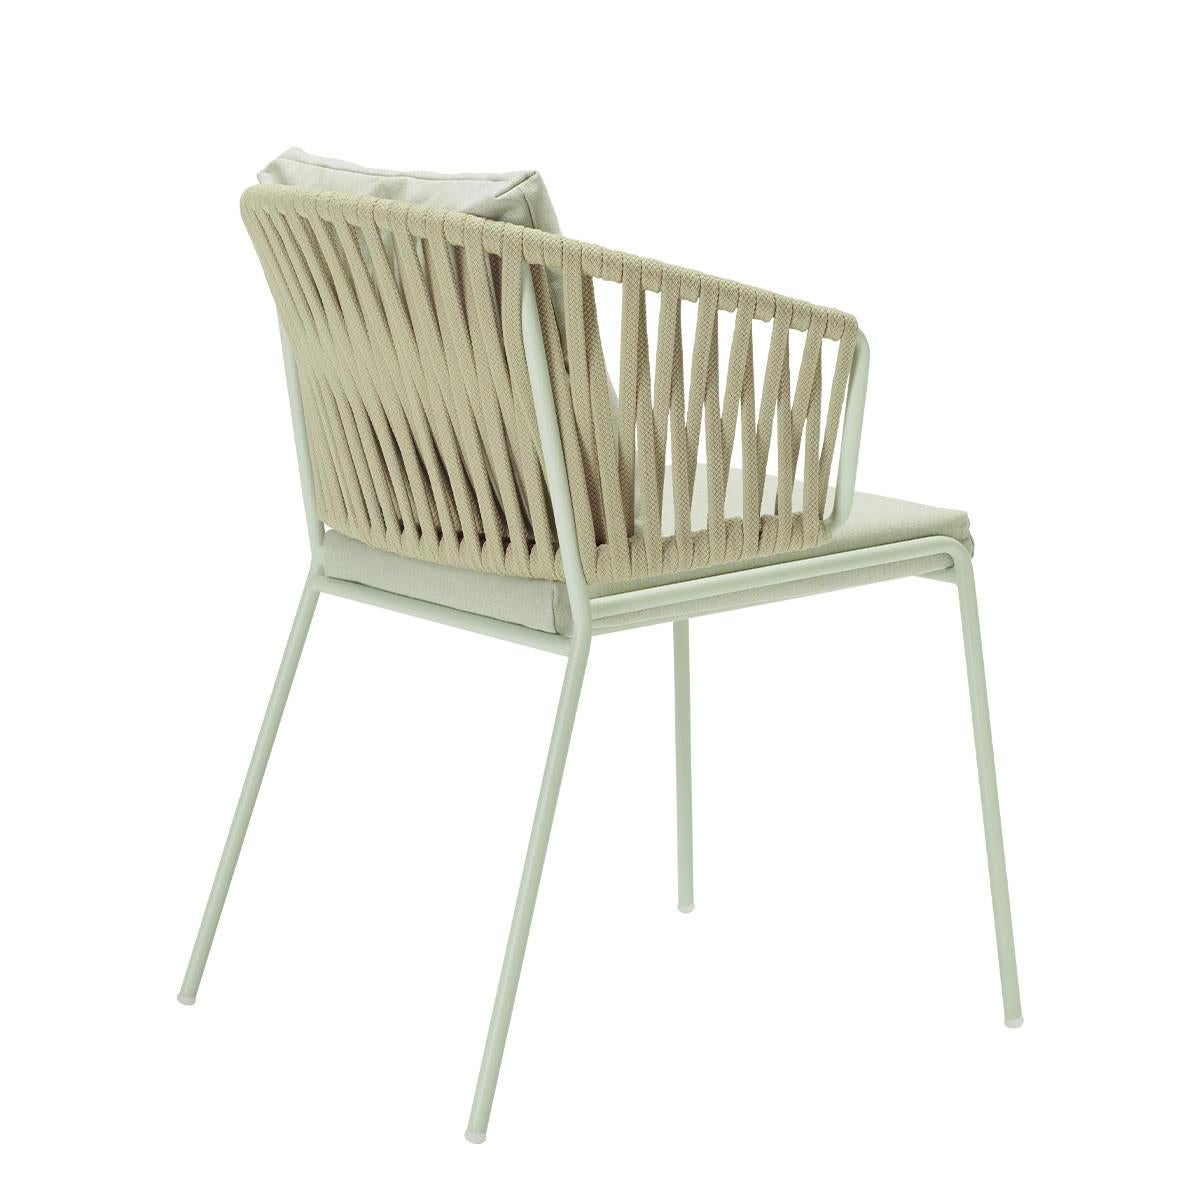 Paire de fauteuils en métal et cordes de couleur crème pour l'extérieur ou l'intérieur, 21e siècle
Fauteuil de production moderne pour l'extérieur ou l'intérieur. La structure est en métal et renforcée par les cordes à l'arrière. Ce fauteuil